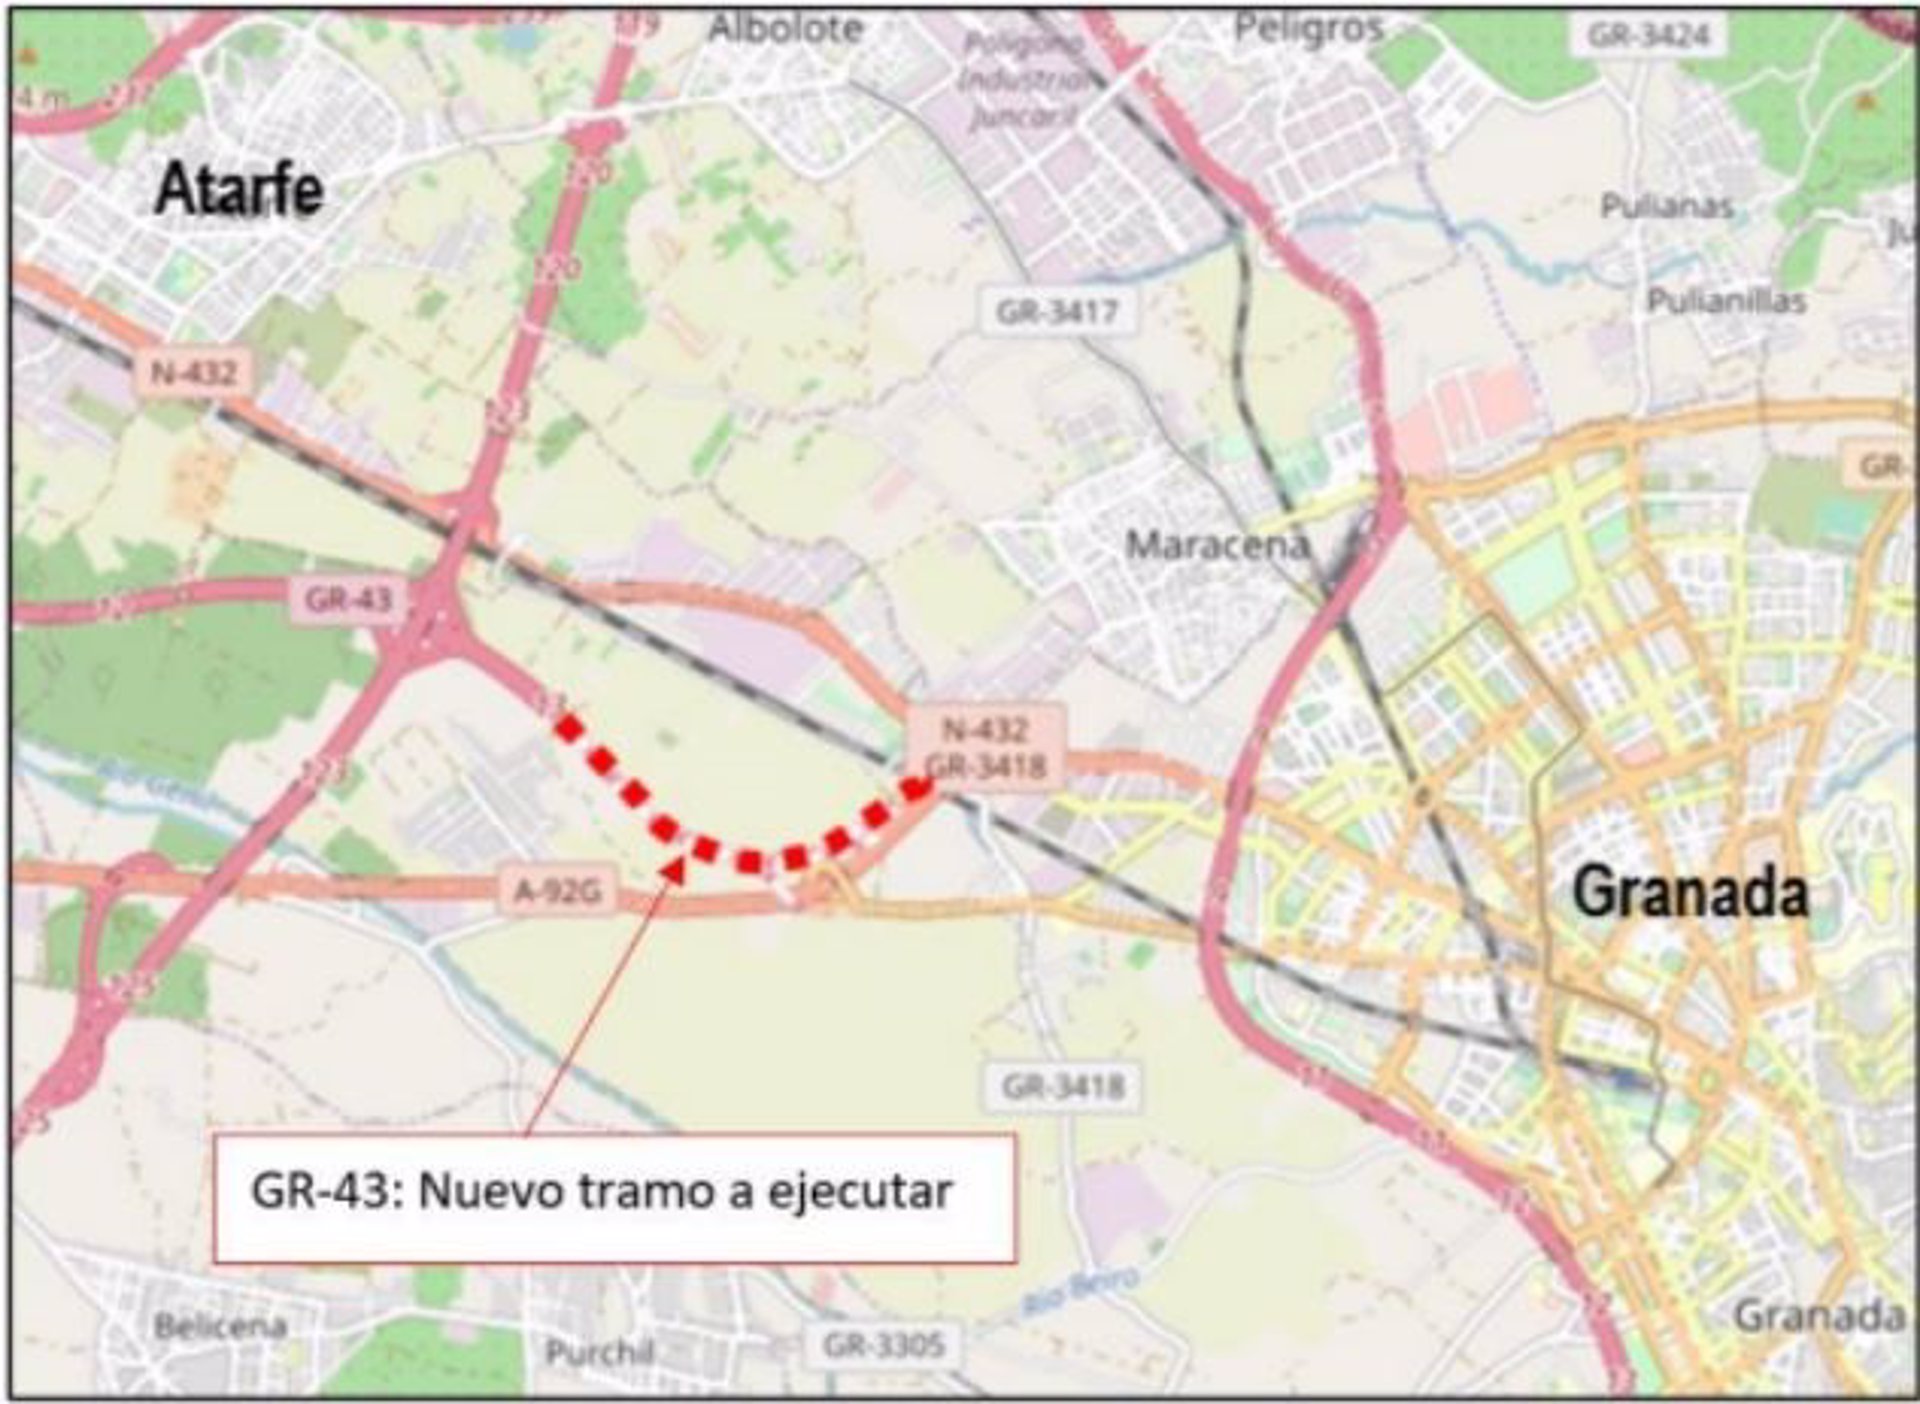 El Gobierno adjudica por 11,2 millones de euros las obras de la autovía GR-43 entre Atarfe y Granada